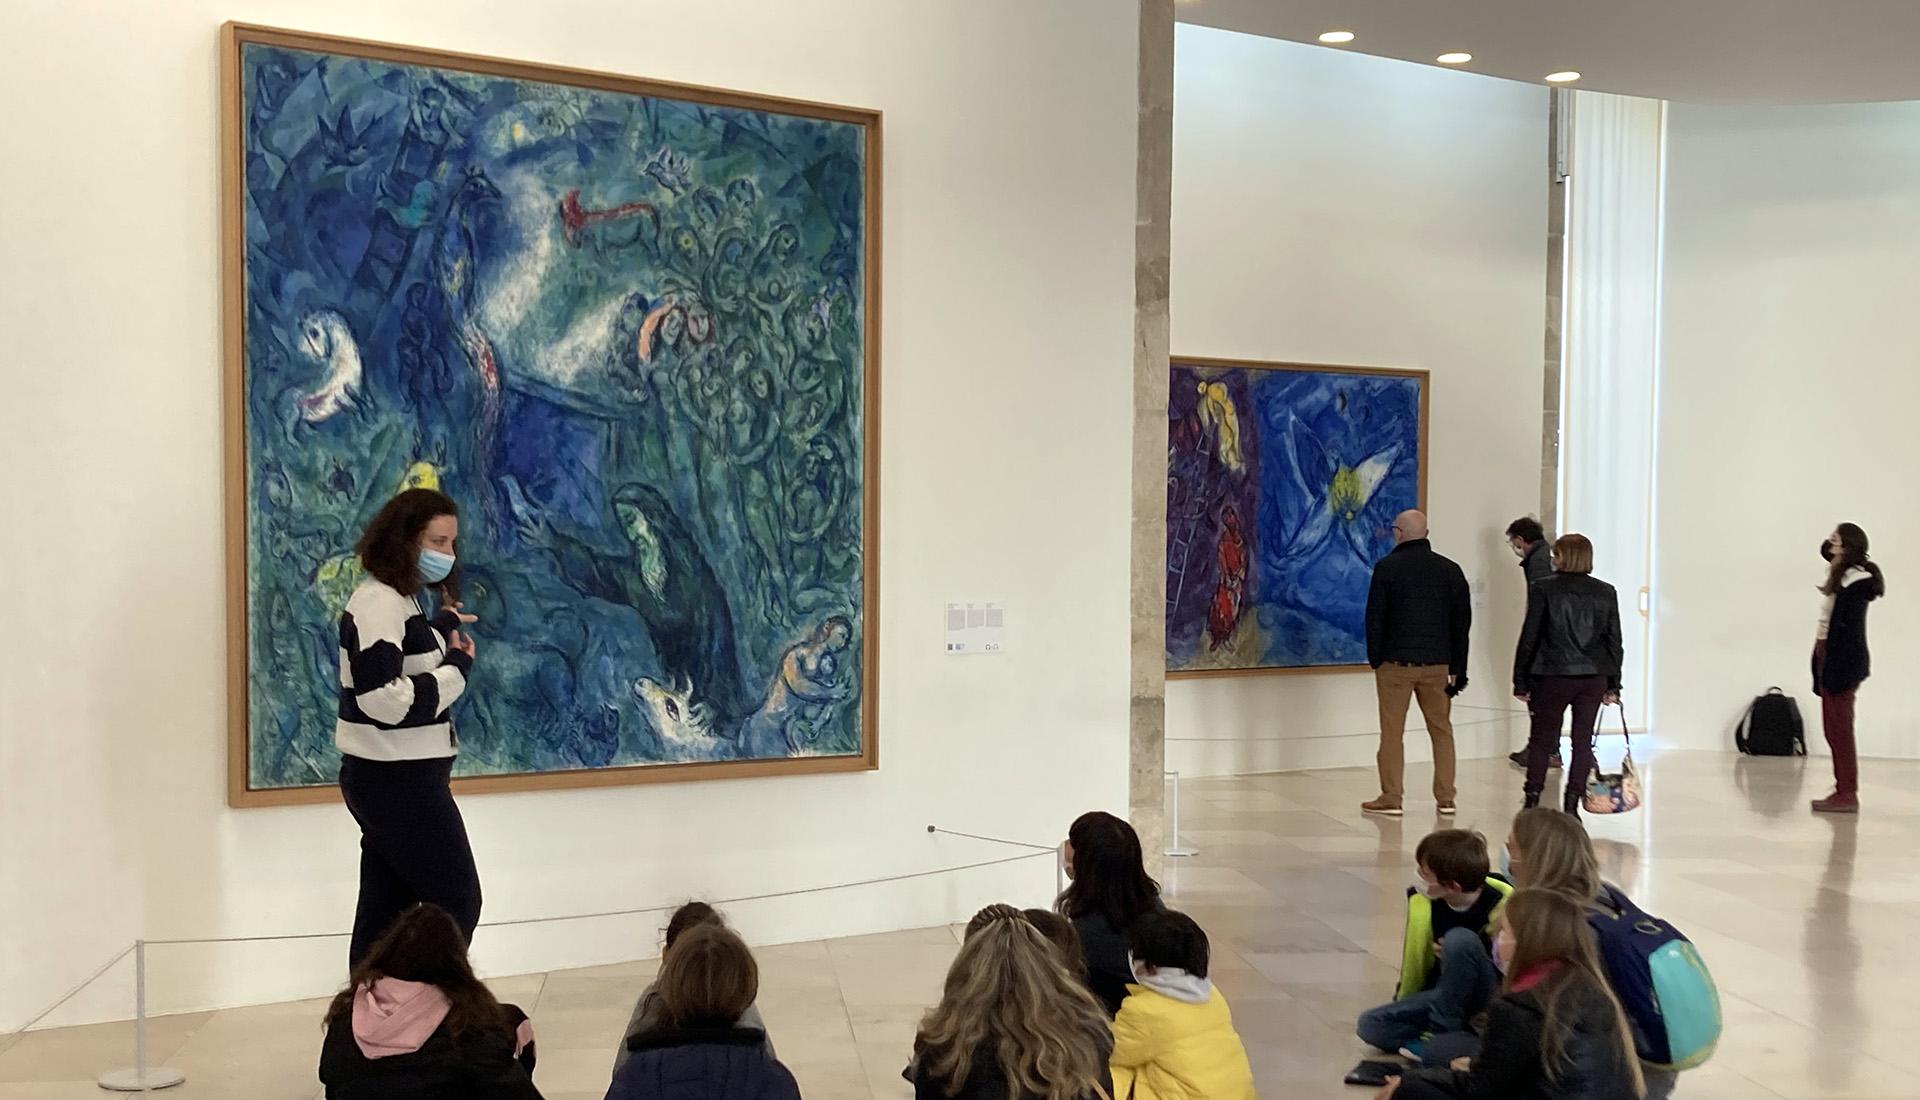 Visite jeune public dans la salle du Message Biblique, devant l'œuvre de Marc Chagall, "L'Arche de Noé" (1961-1966, huile sur toile). Nice, musée national Marc Chagall. Photo : © DR / musées nationaux du XXe siècle des Alpes-Maritimes © Adagp, Paris, 2022.